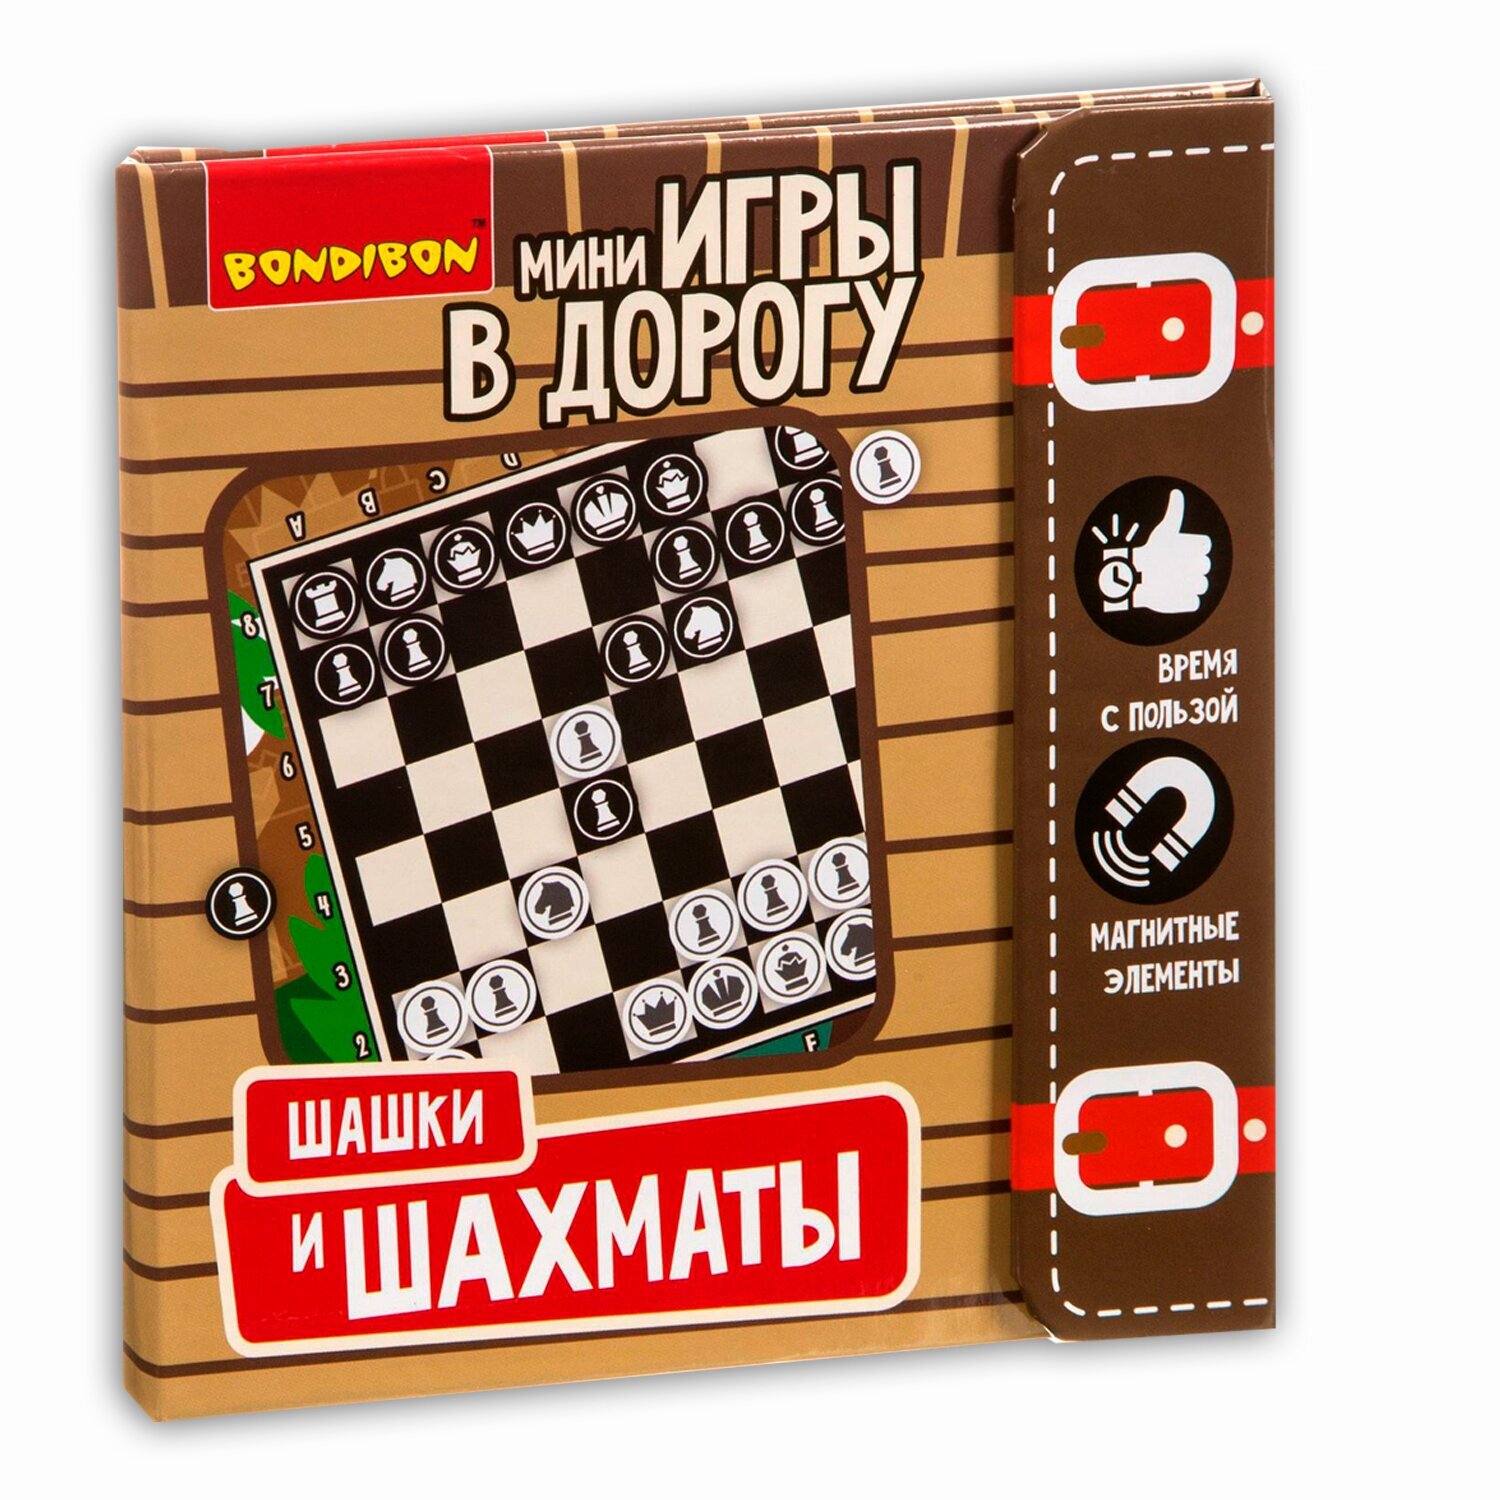 Шашки, Шахматы, магнитная настольная игра 2в1 Bondibon развивающая в дорогу / Подарок мужчине, парню, мужу, другу